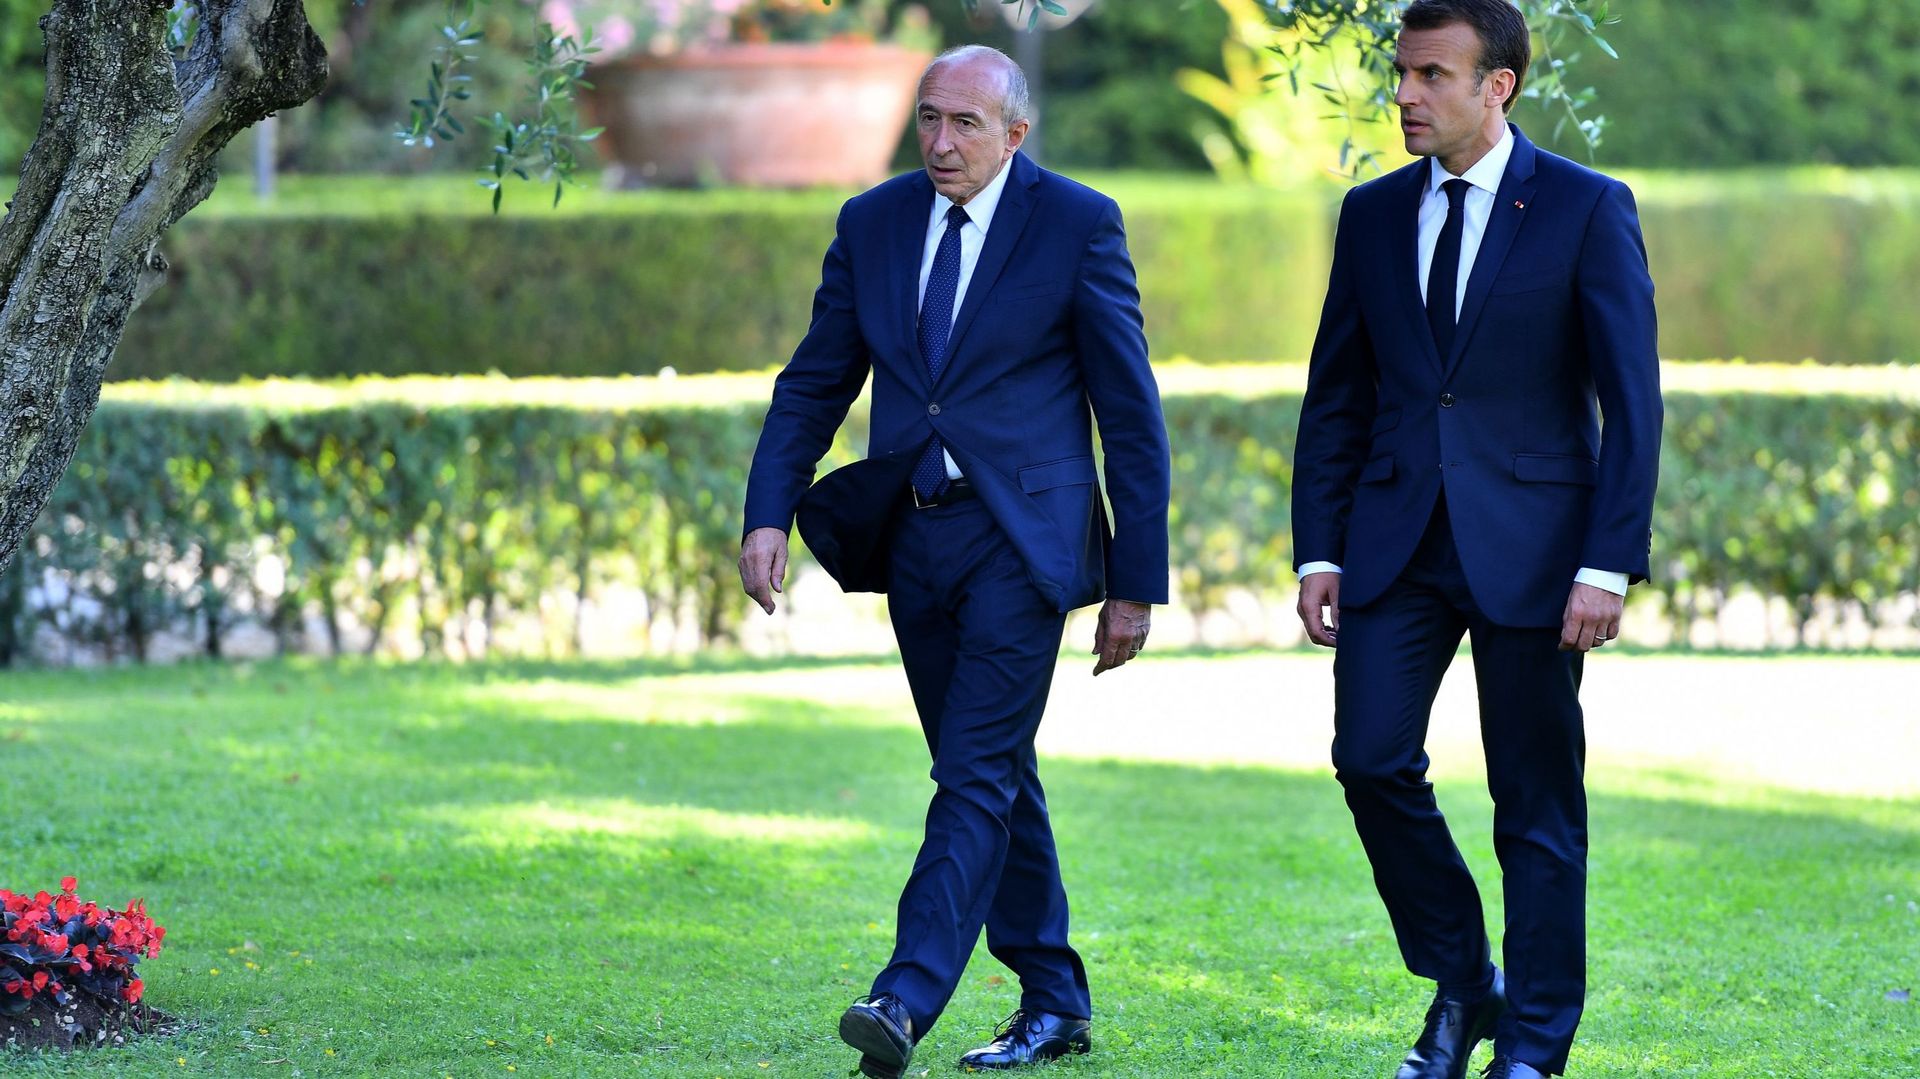 Affaire Benalla: Emmanuel Macron surtout préoccupé par la réforme constitutionnelle, selon Gérard Collomb